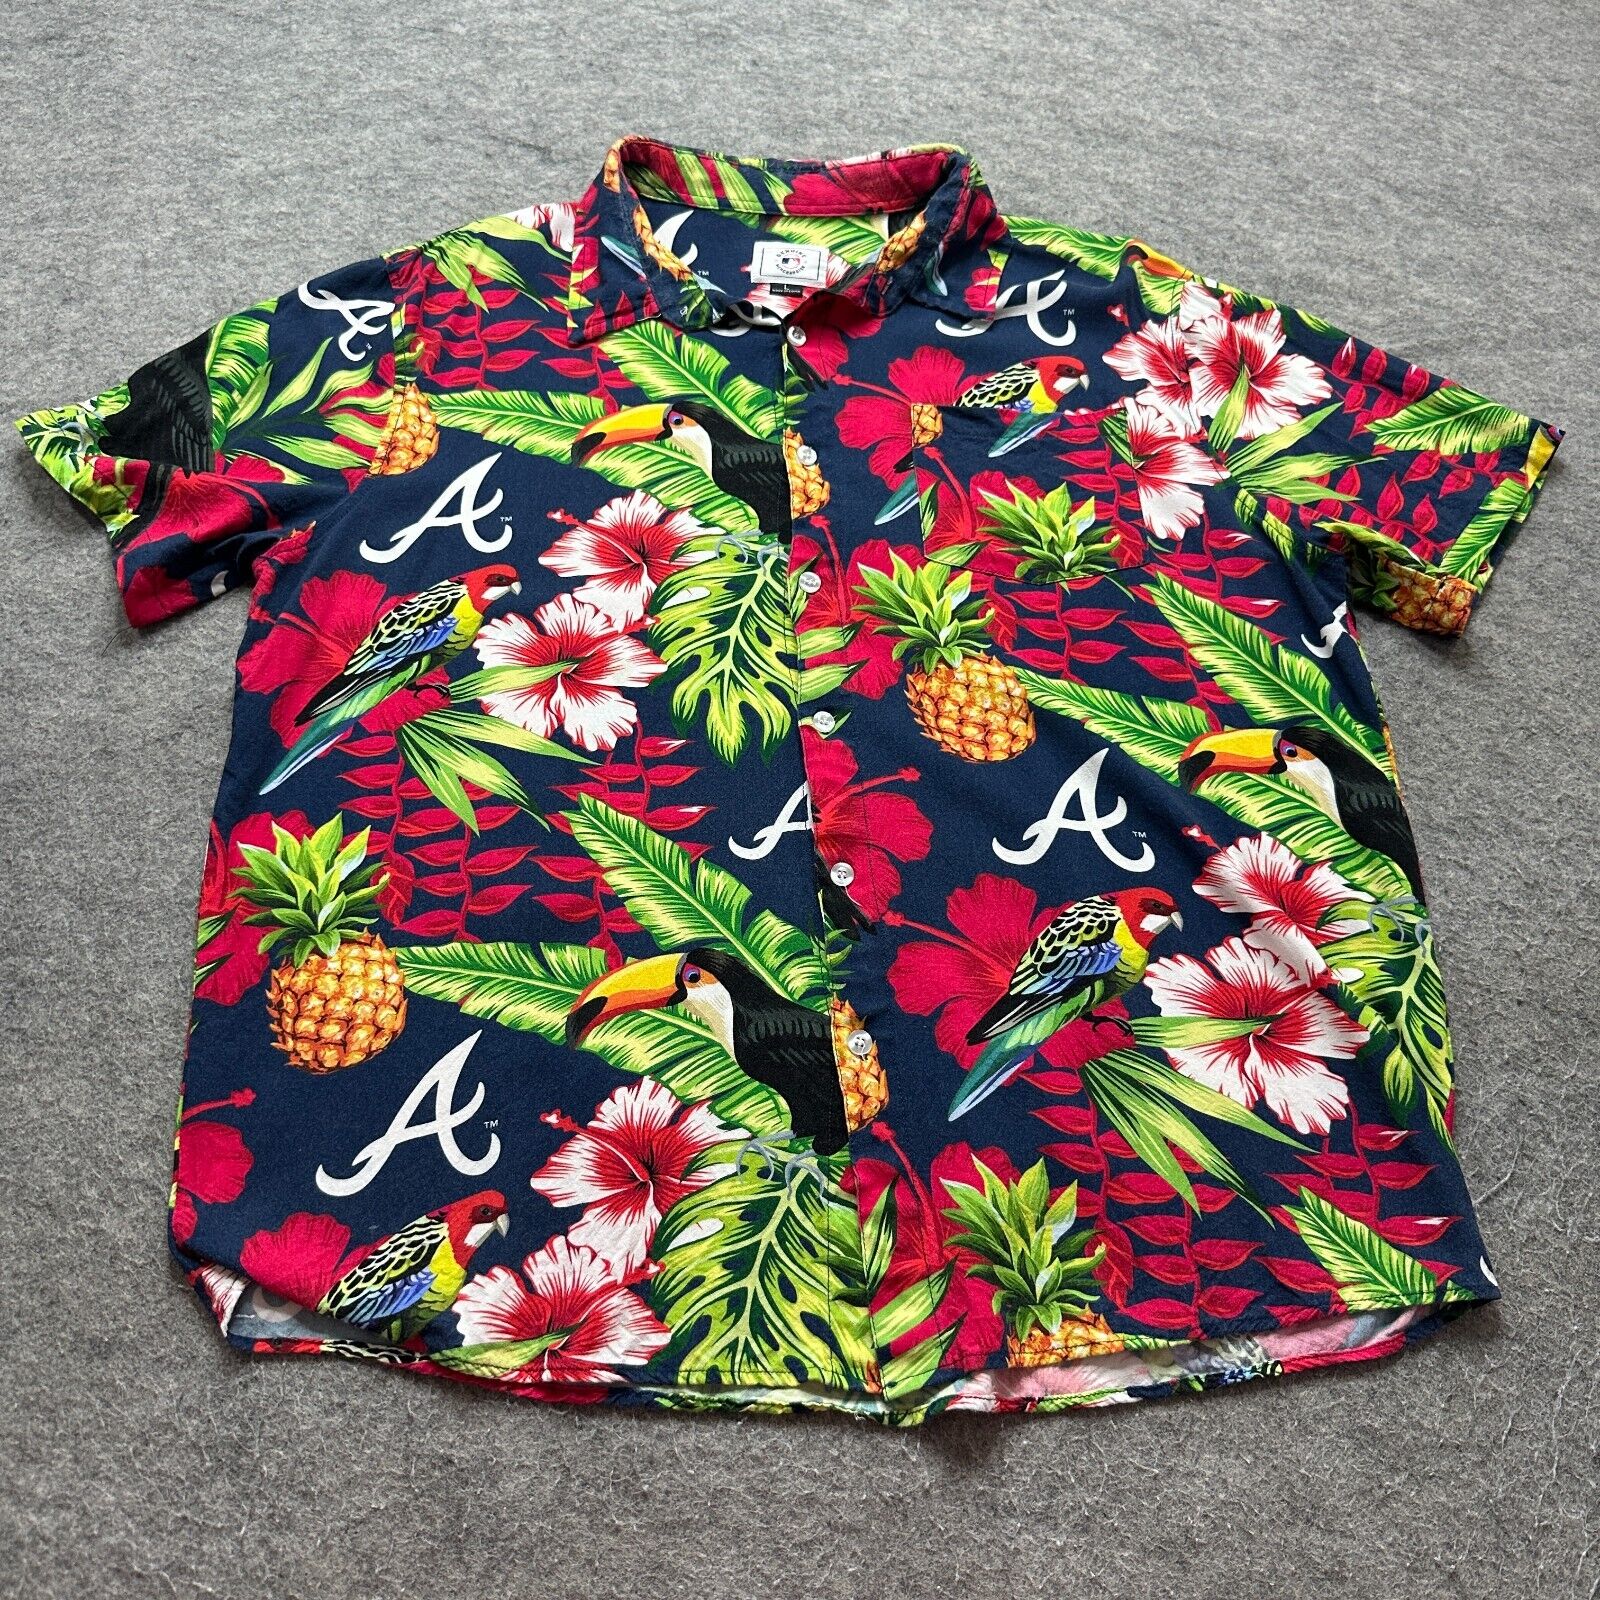 Atlanta Braves Hawaiian Aloha Shirt Men L Blue Red Green Tropical Graphic MLB